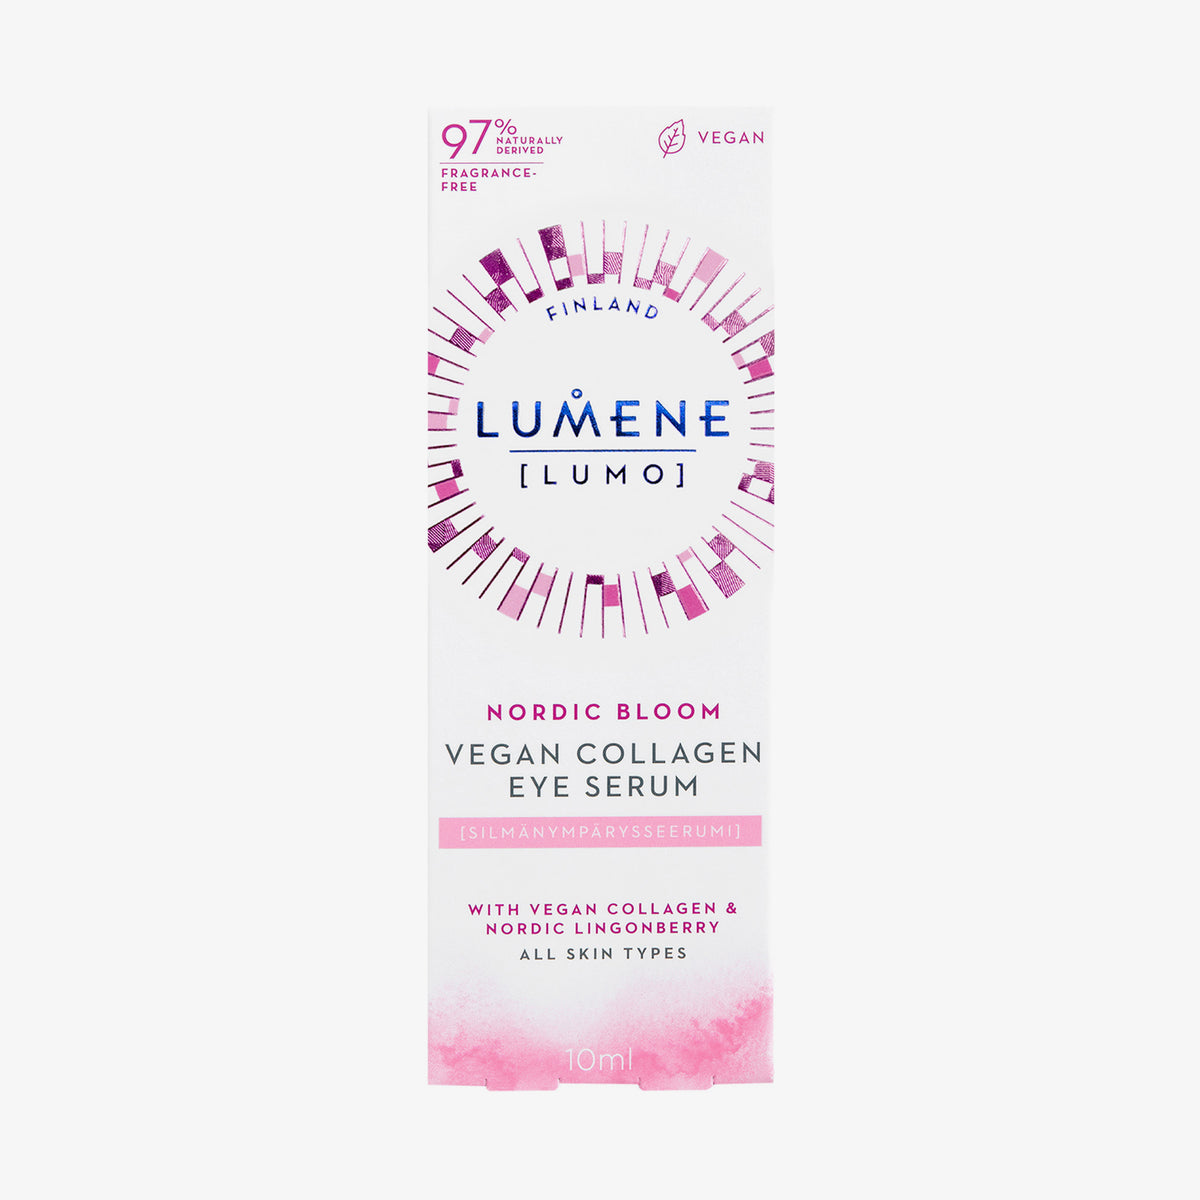 Lumene | NORDIC BLOOM [LUMO] Vegan Collagen Eye Serum